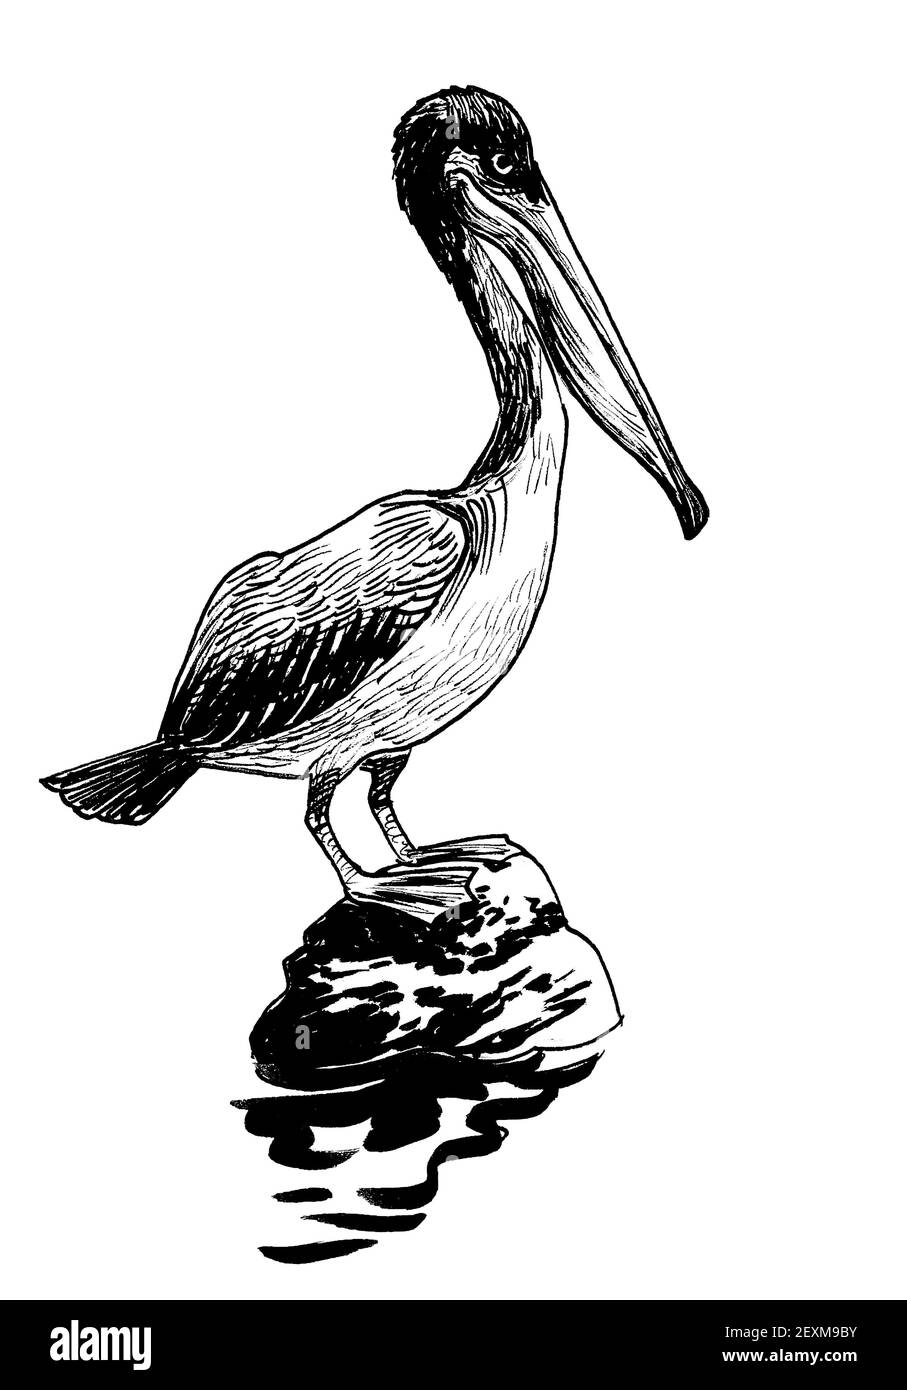 Oiseau Pelican assis sur une pierre. Dessin noir et blanc Banque D'Images